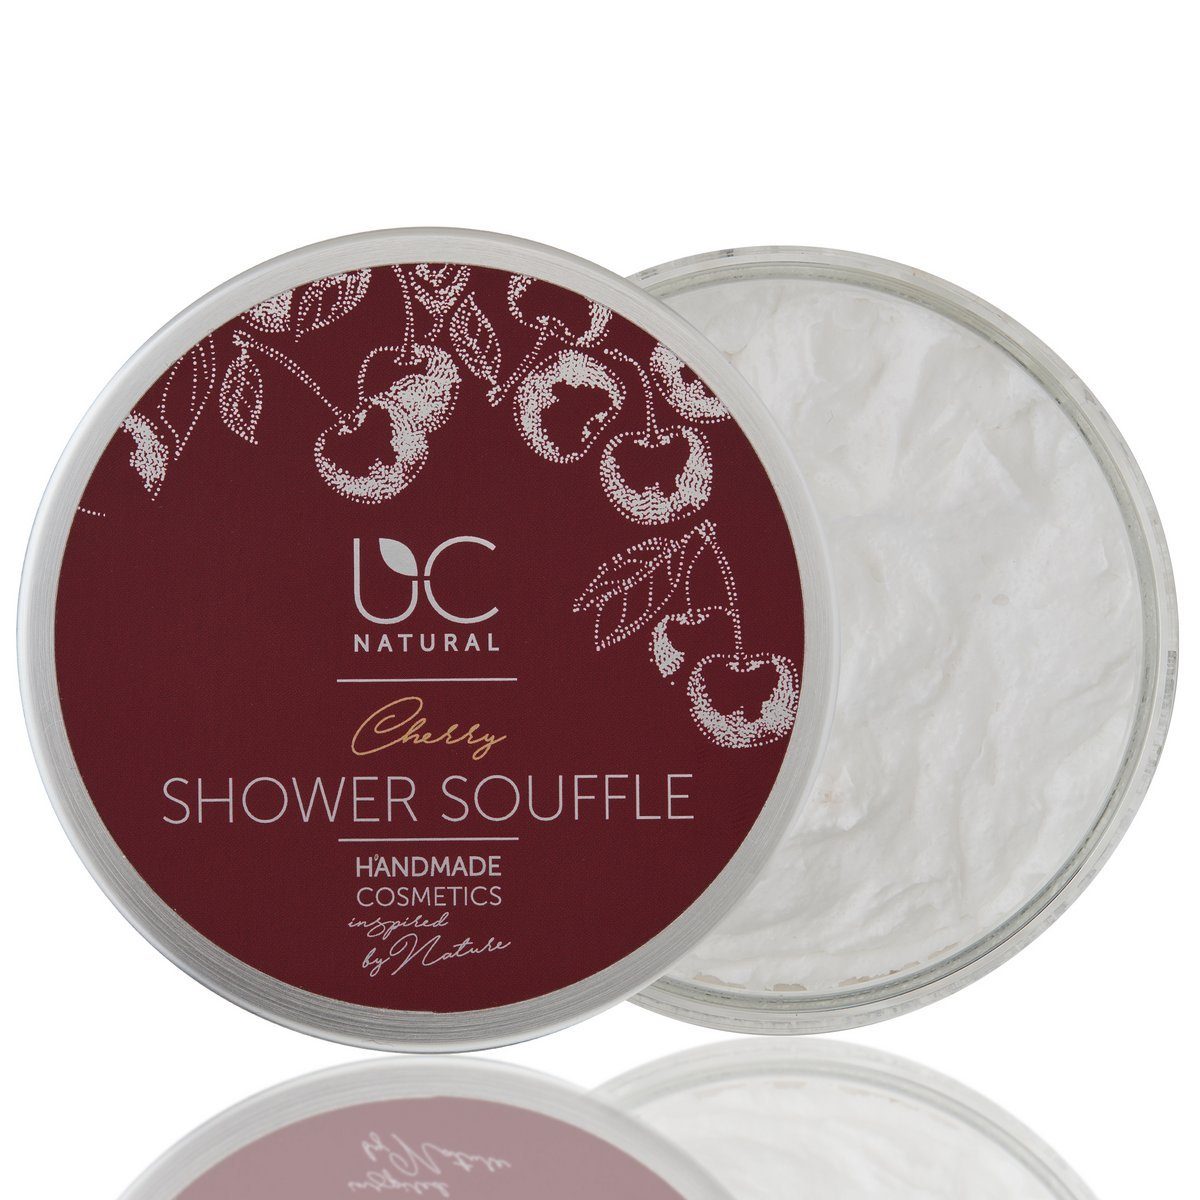 UC Natural Duschpflege UC Natural Shower Souffle, 1-tlg., Kirsch Shower Soufflé handgemacht 150g vegan